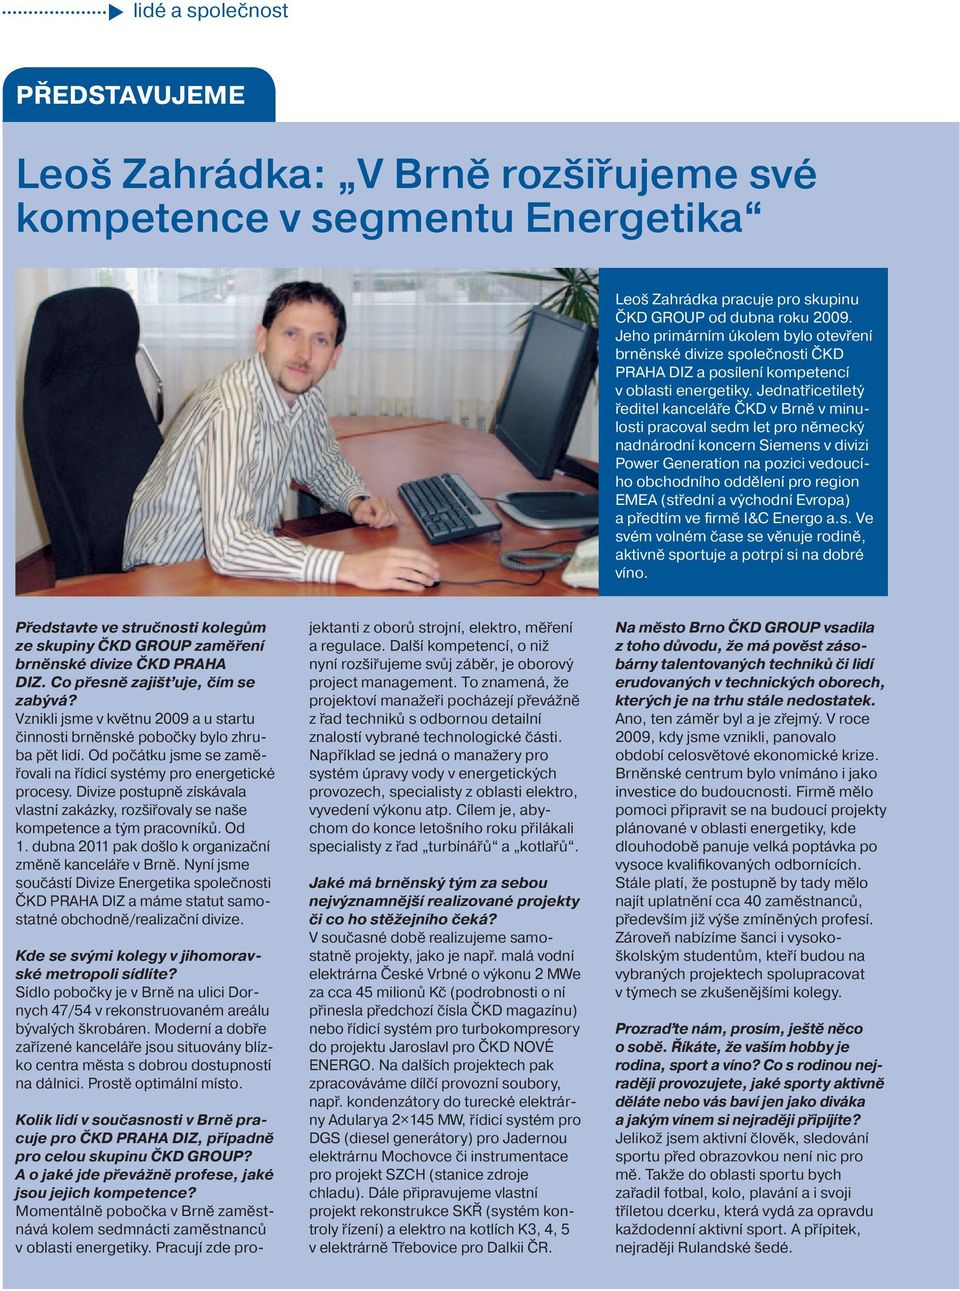 Jednatřicetiletý ředitel kanceláře ČKD v Brně v minulosti pracoval sedm let pro německý nadnárodní koncern Siemens v divizi Power Generation na pozici vedoucího obchodního oddělení pro region EMEA